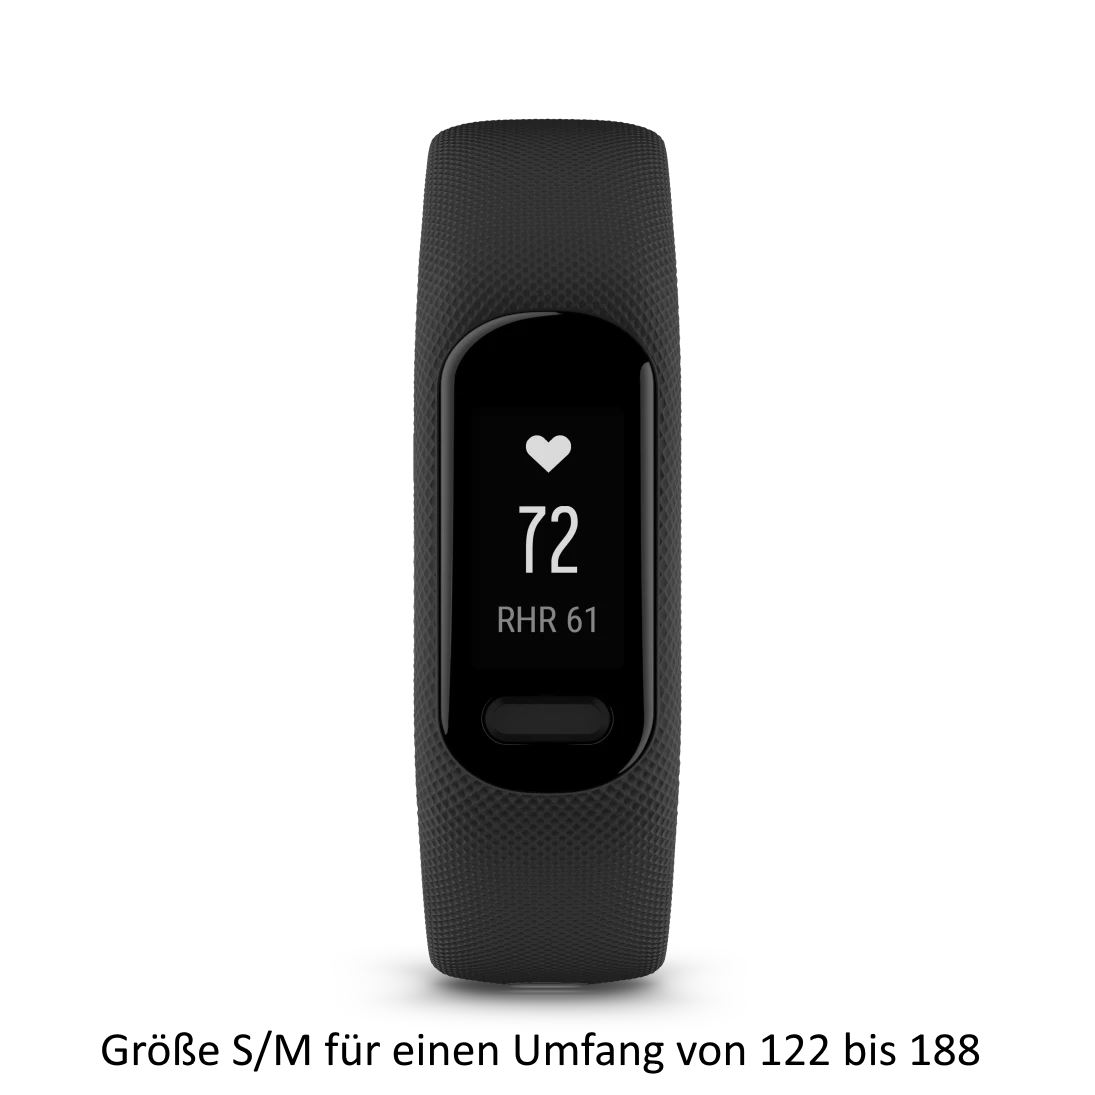 Produktbild von Garmin vivosmart 5, schwarz (Größe S/M) - Fitness Tracker mit Herzfrequenzmessung und Fitness Funktionen